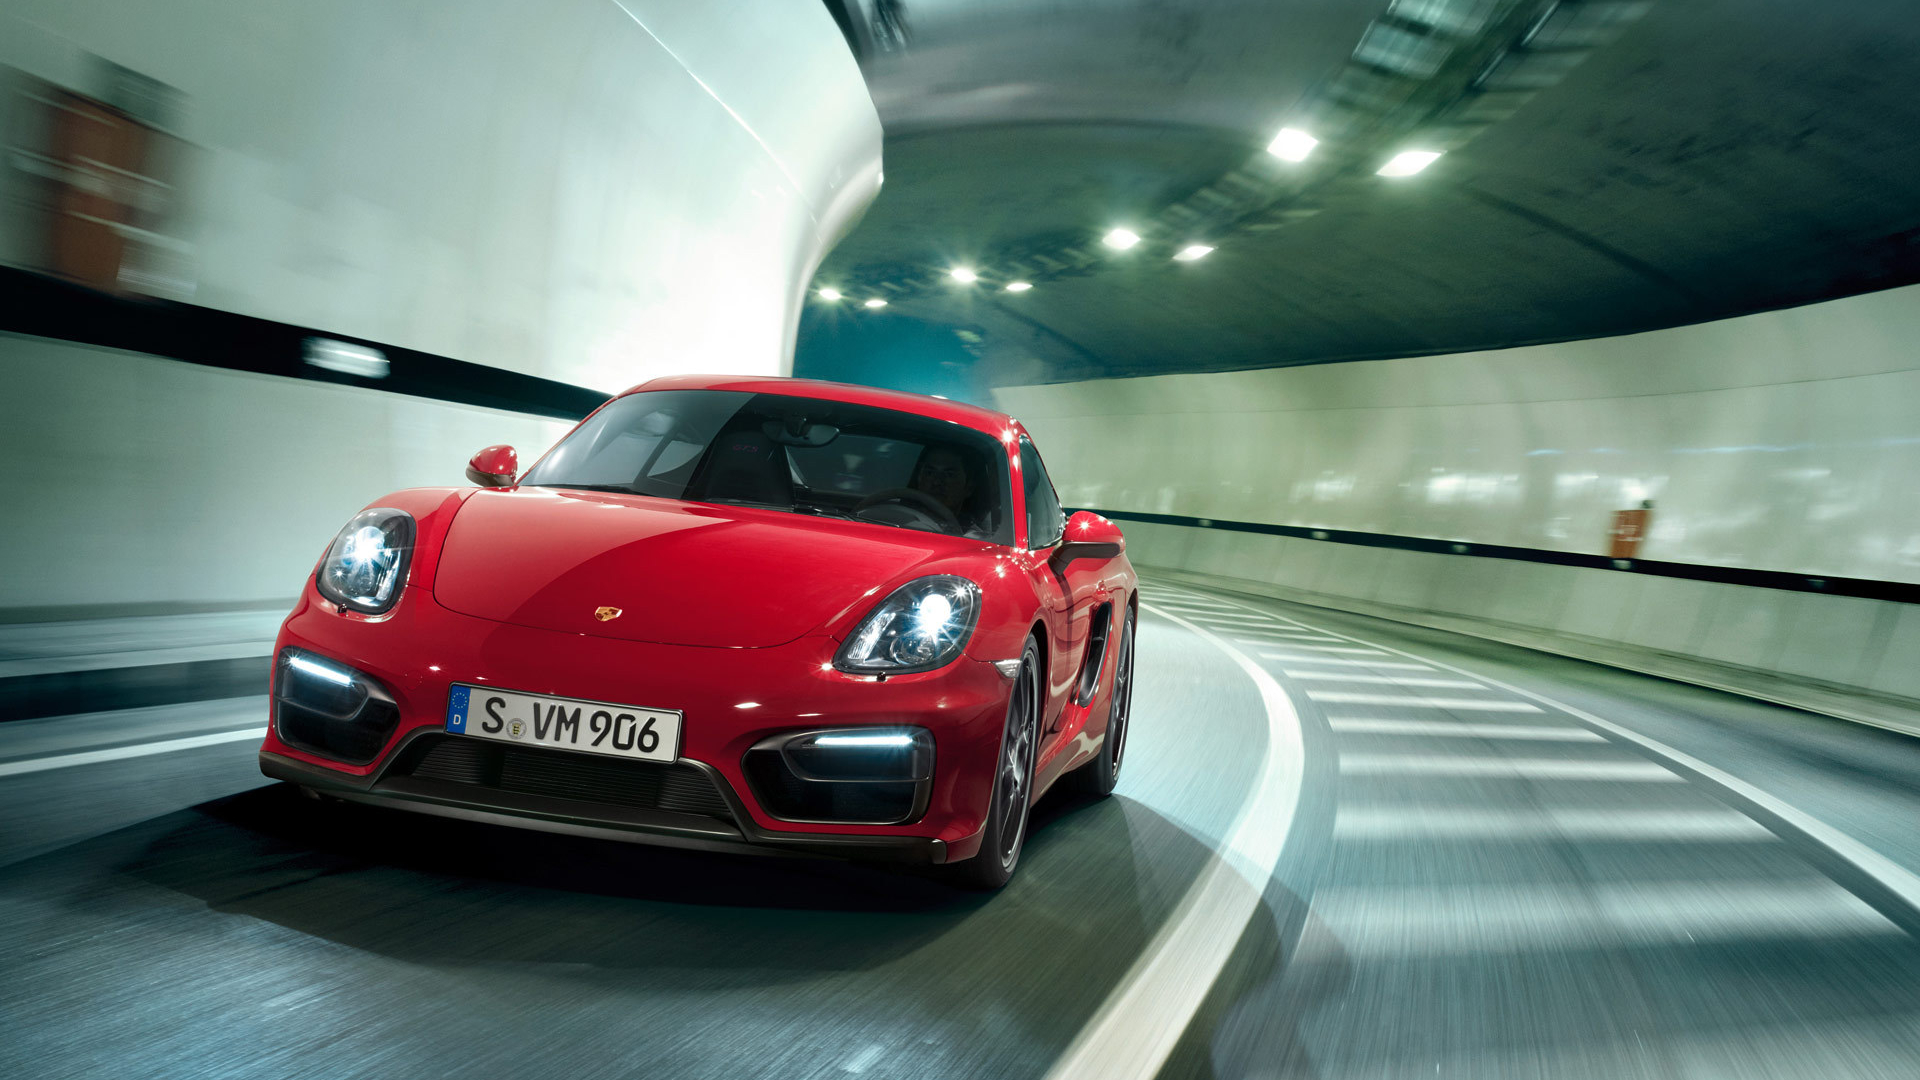 Descarga gratuita de fondo de pantalla para móvil de Porsche Caimán Gts, Porsche Caimán, Porsche, Vehículos, Coche.